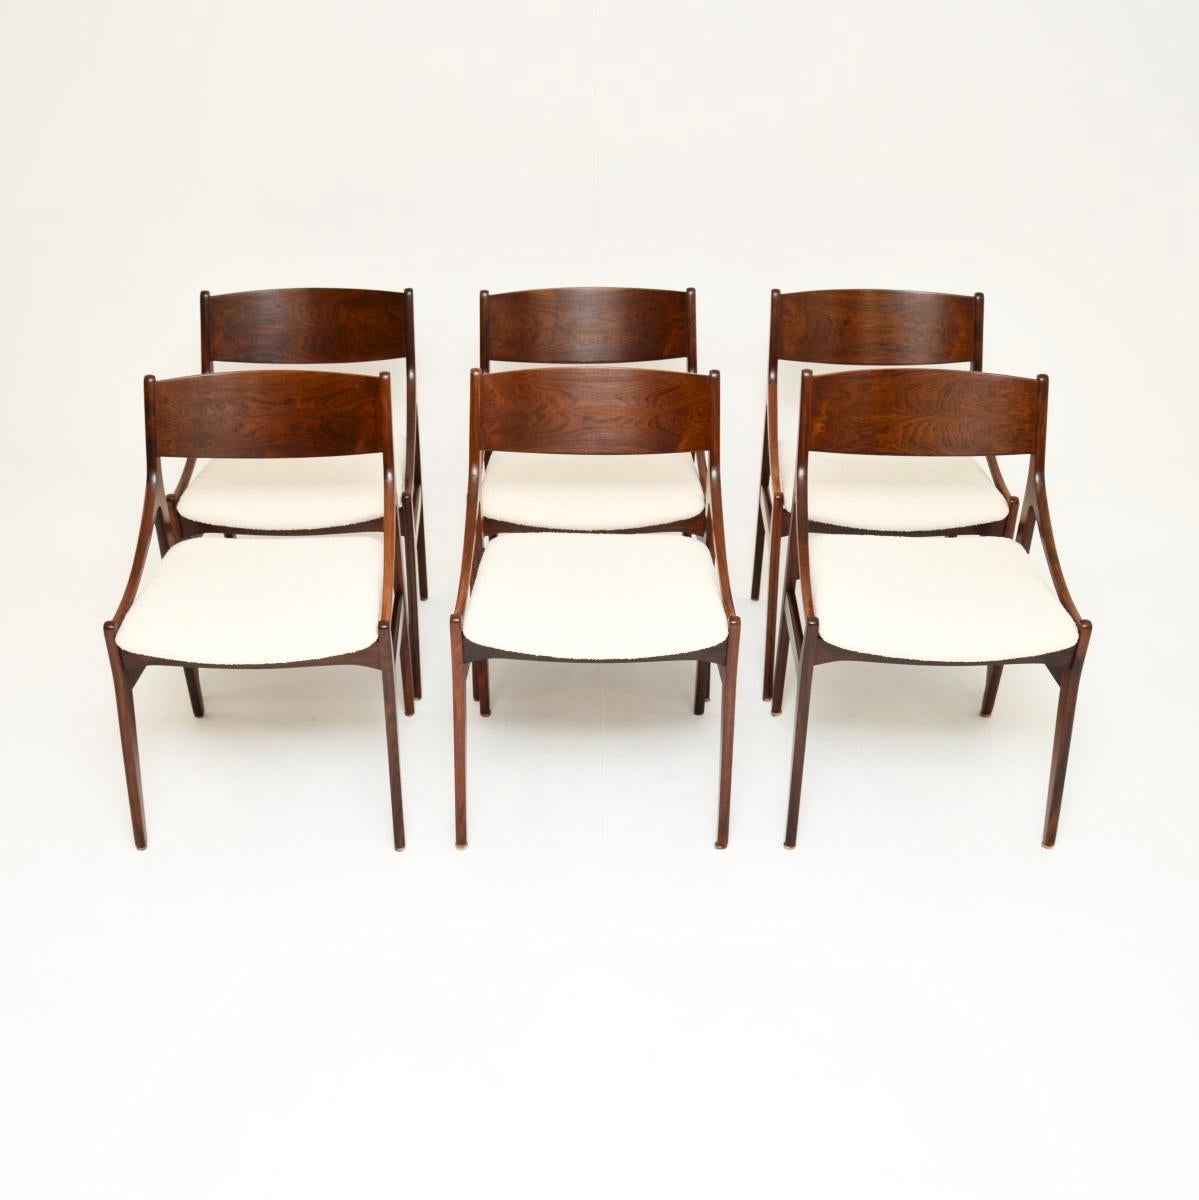 Un ensemble absolument magnifique de six chaises de salle à manger danoises par H. Vestervig Eriksen. Ils ont été fabriqués au Danemark dans les années 1960 par BRDR Tromborg.

Ils sont d'une qualité exceptionnelle et leur design est magnifique,